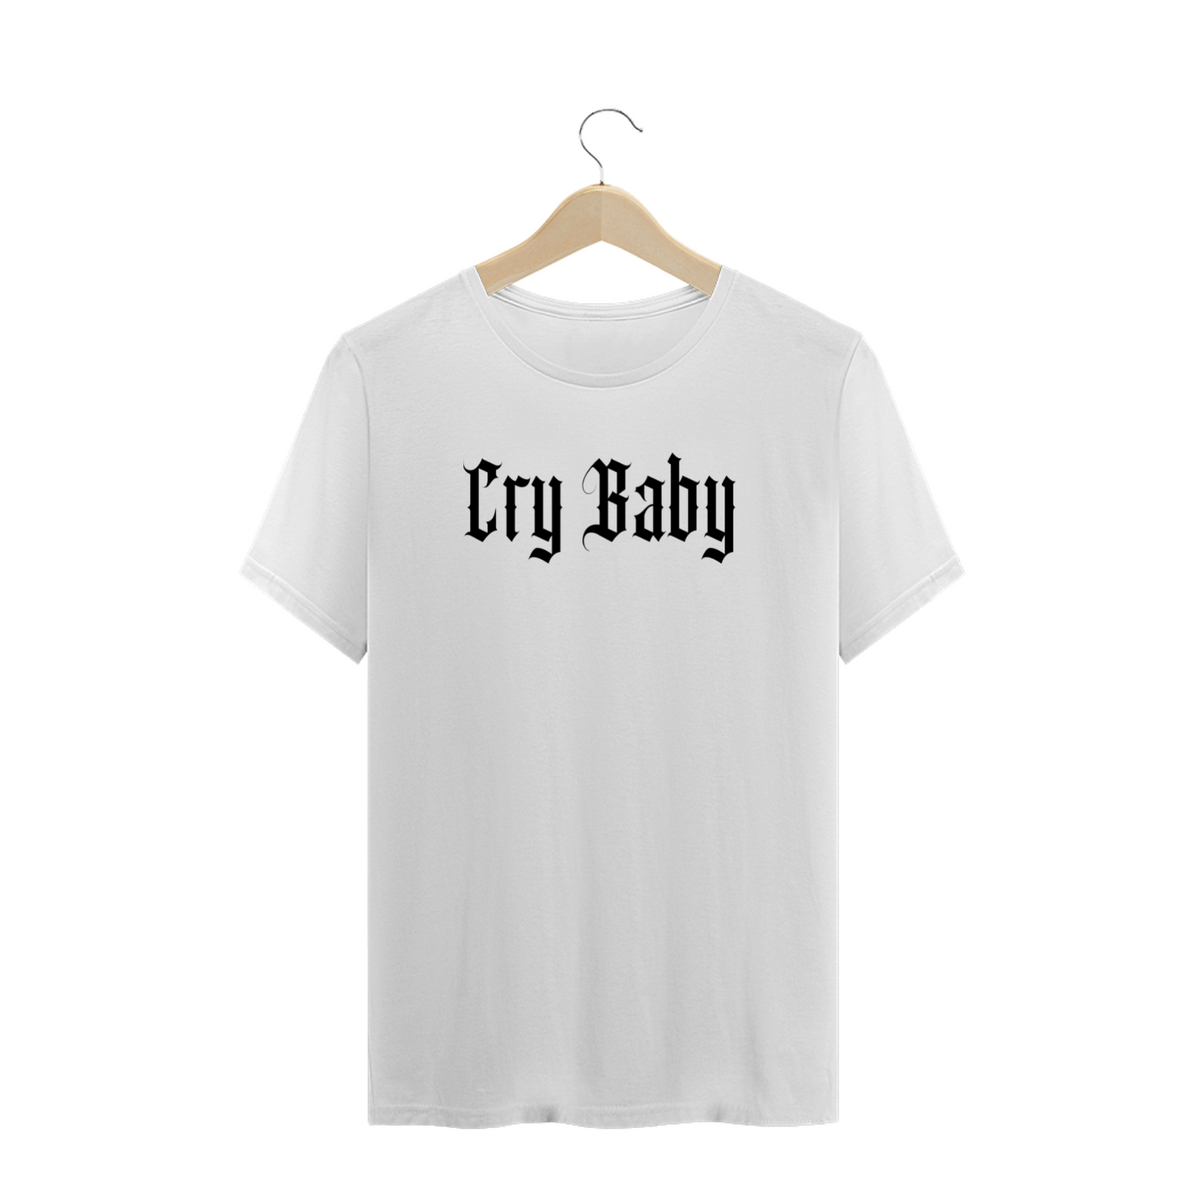 Nome do produto: Cry Baby Tradicional branca